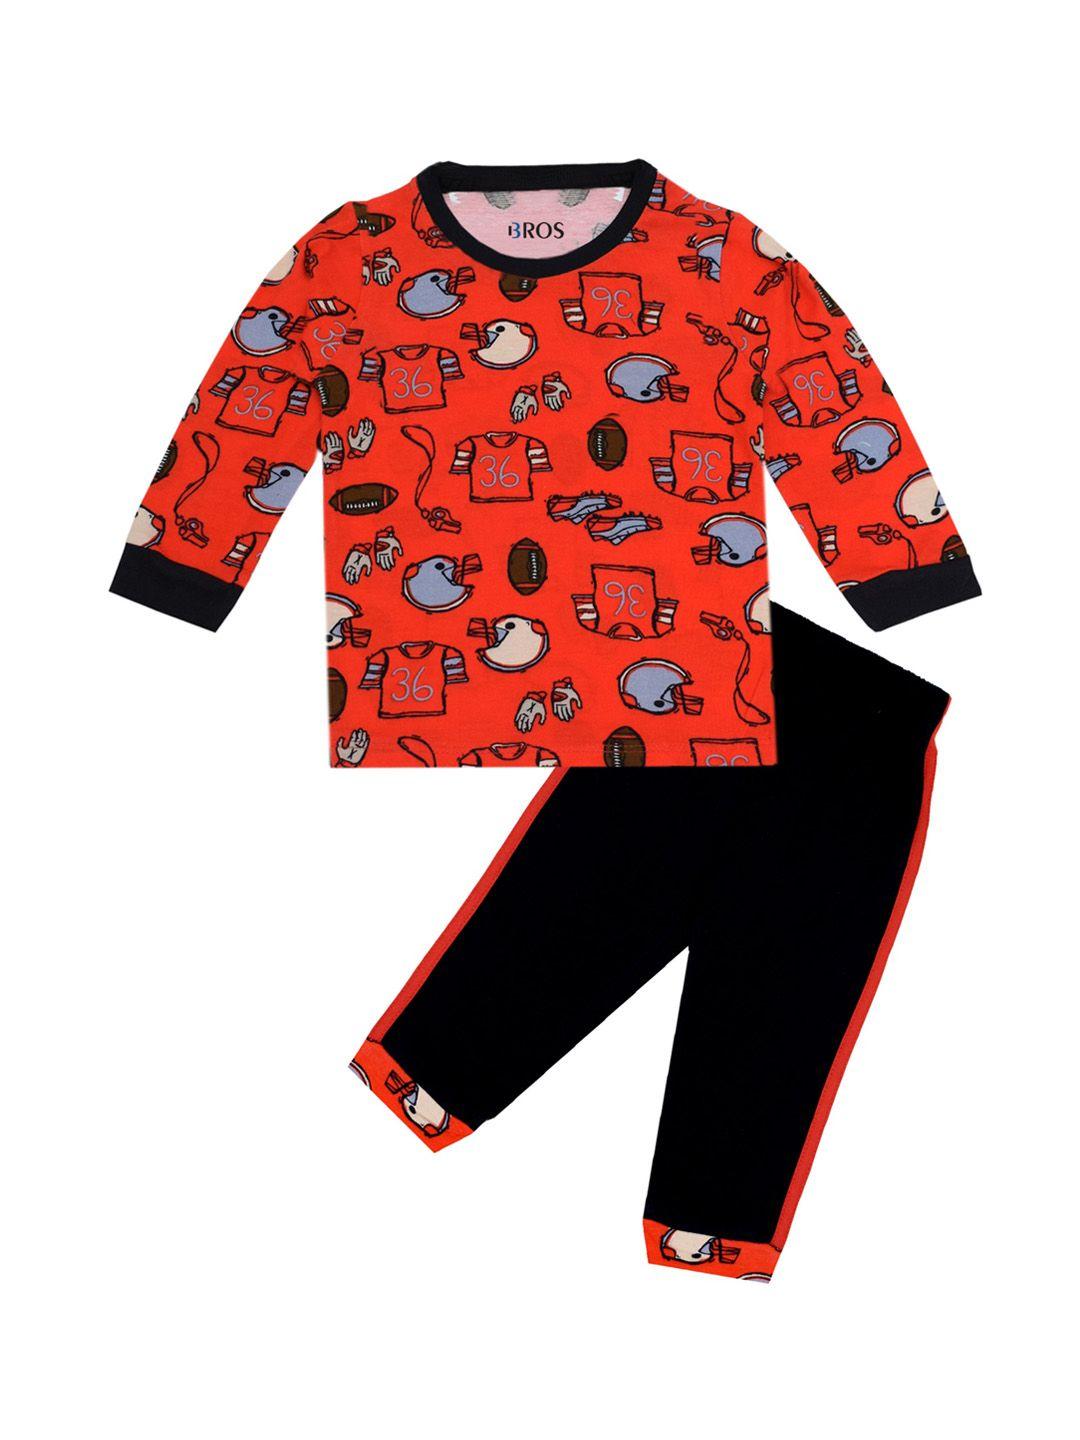 3bros unisex kids red & black printed t-shirt with pyjamas